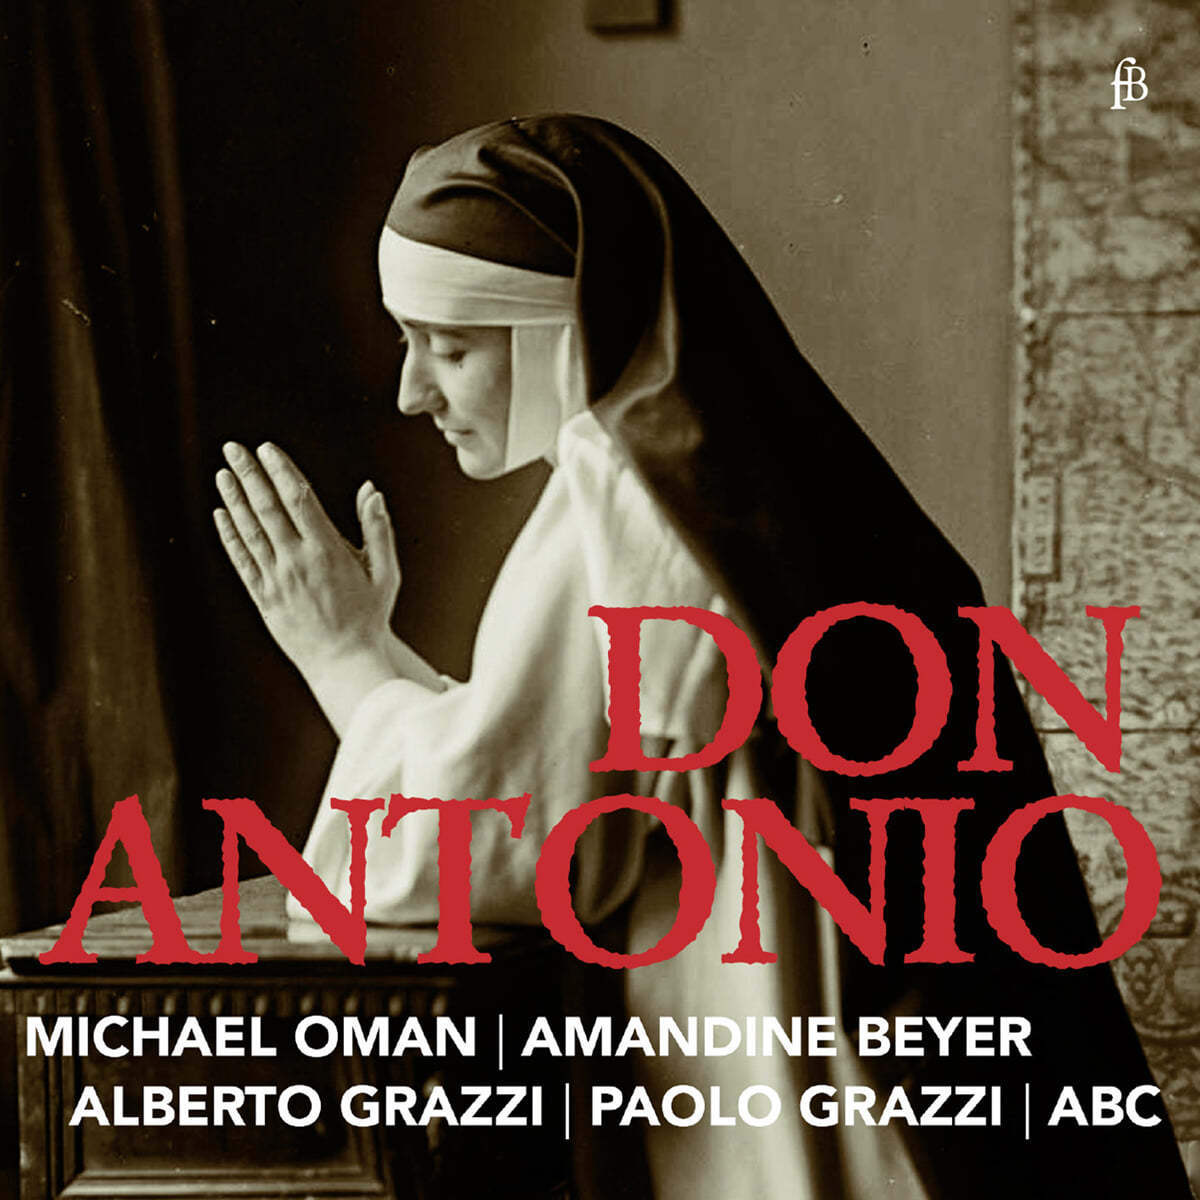 돈 안토니오, 사랑의 사제 - 비발디의 협주곡 (Don Antonio - Concertos by Vivaldi)